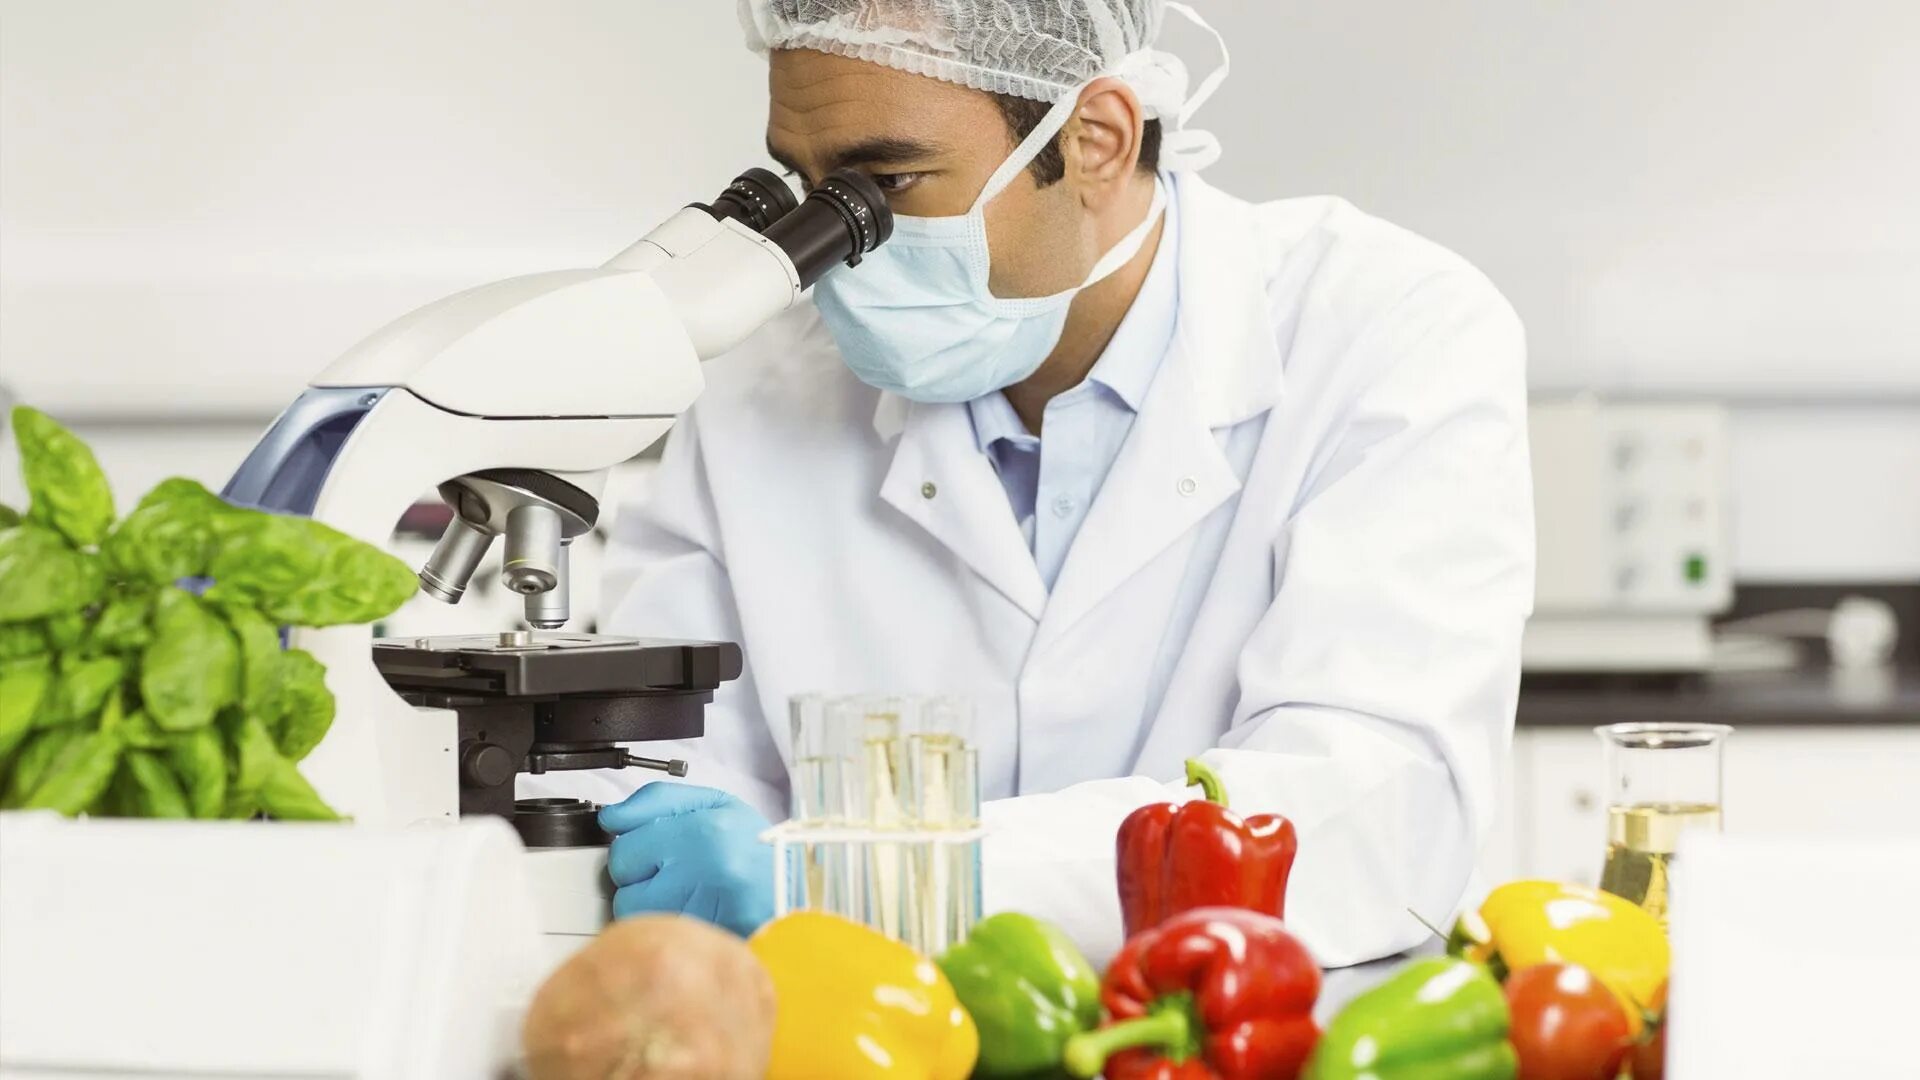 Испытания пищевой продукции. Овощи в лаборатории. Исследование пищевых продуктов. Контроль качества пищевых продуктов. Лабораторные исследования продуктов.